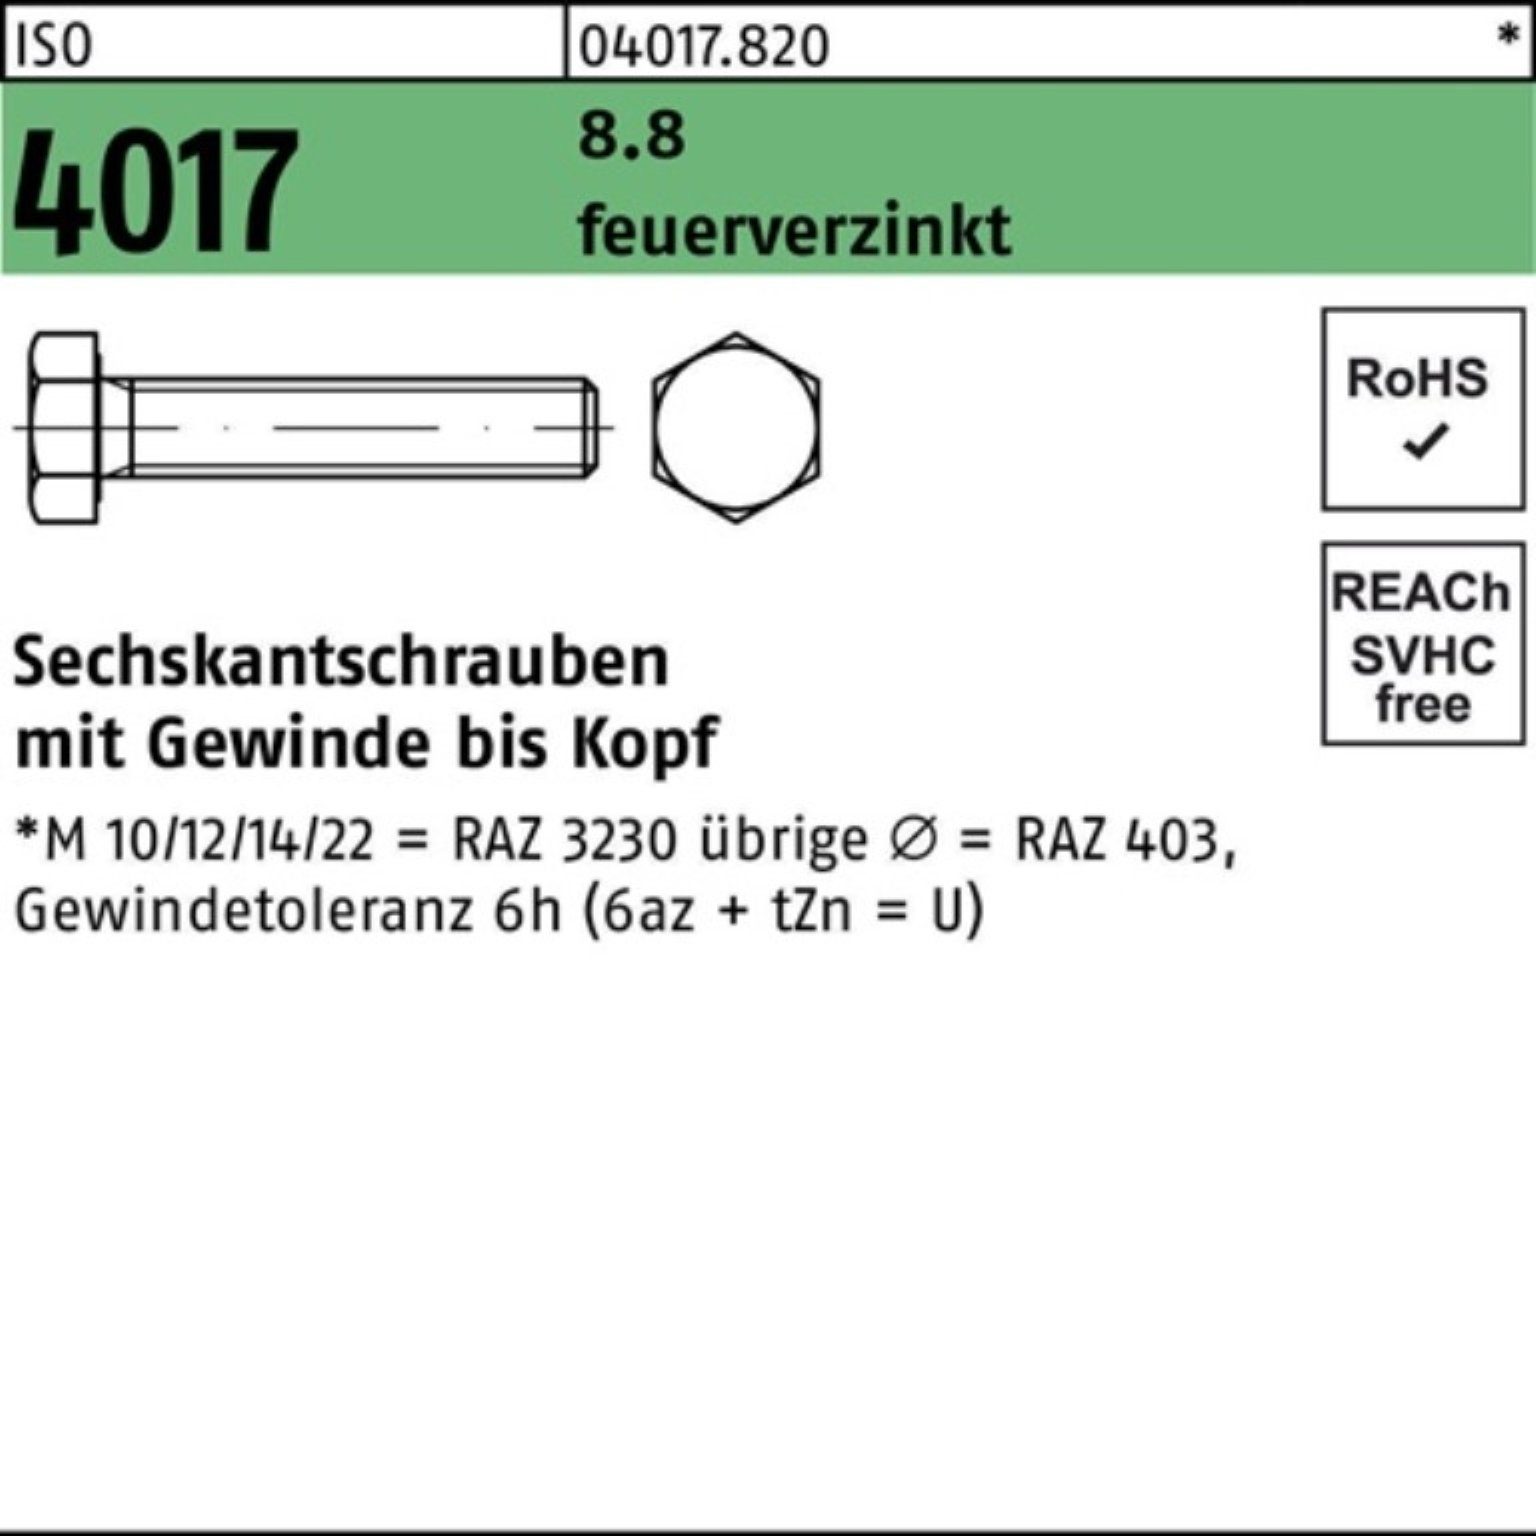 St 30 VG Sechskantschraube Sechskantschraube 4017 Bufab M20x Pack ISO 25 100er feuerverz. 8.8